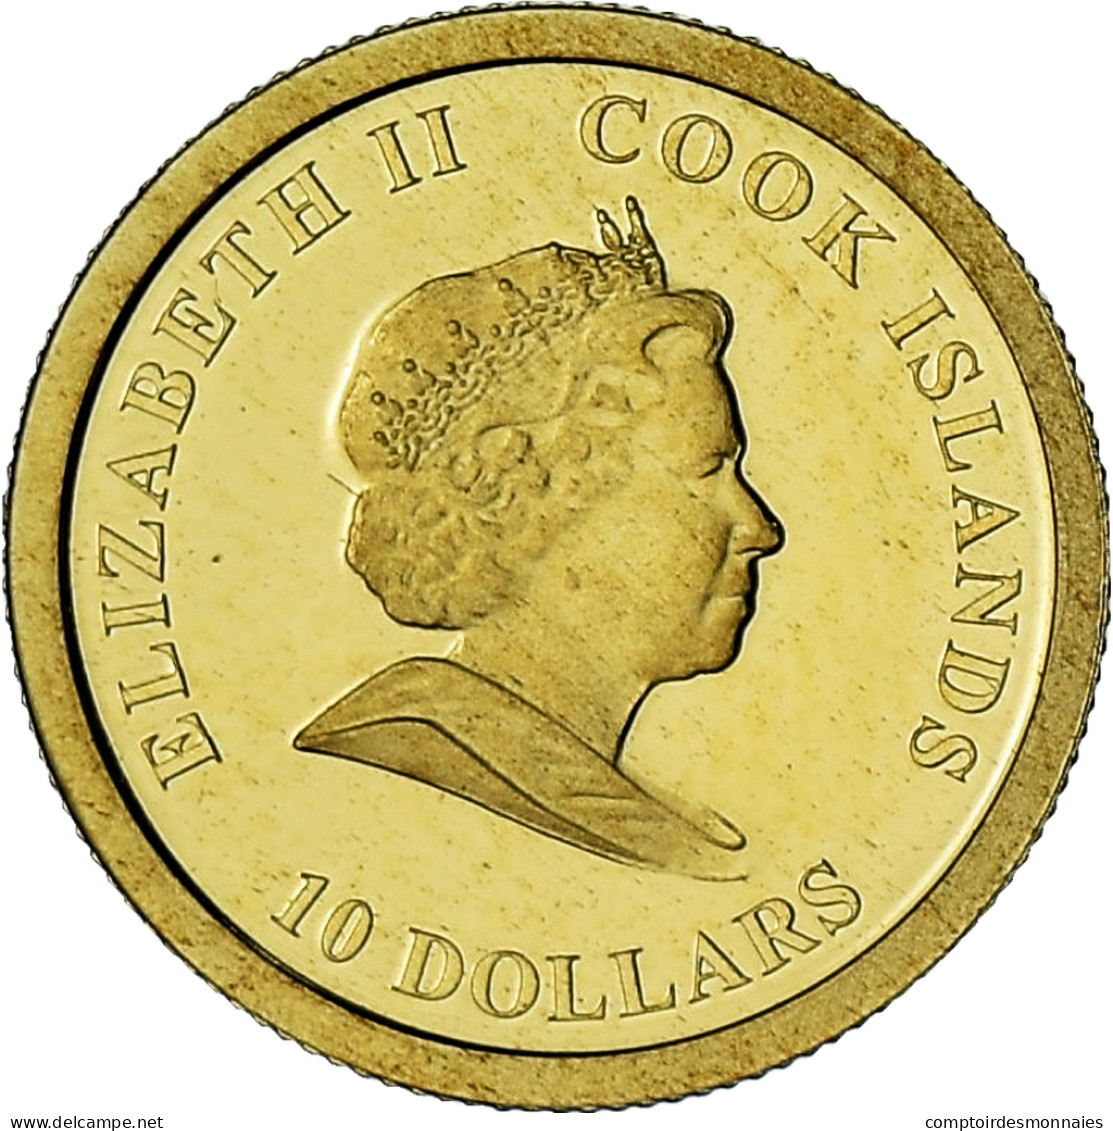 Îles Cook, Elizabeth II, James Cook, 10 Dollars, 2008, BE, FDC, Or - Cook Islands